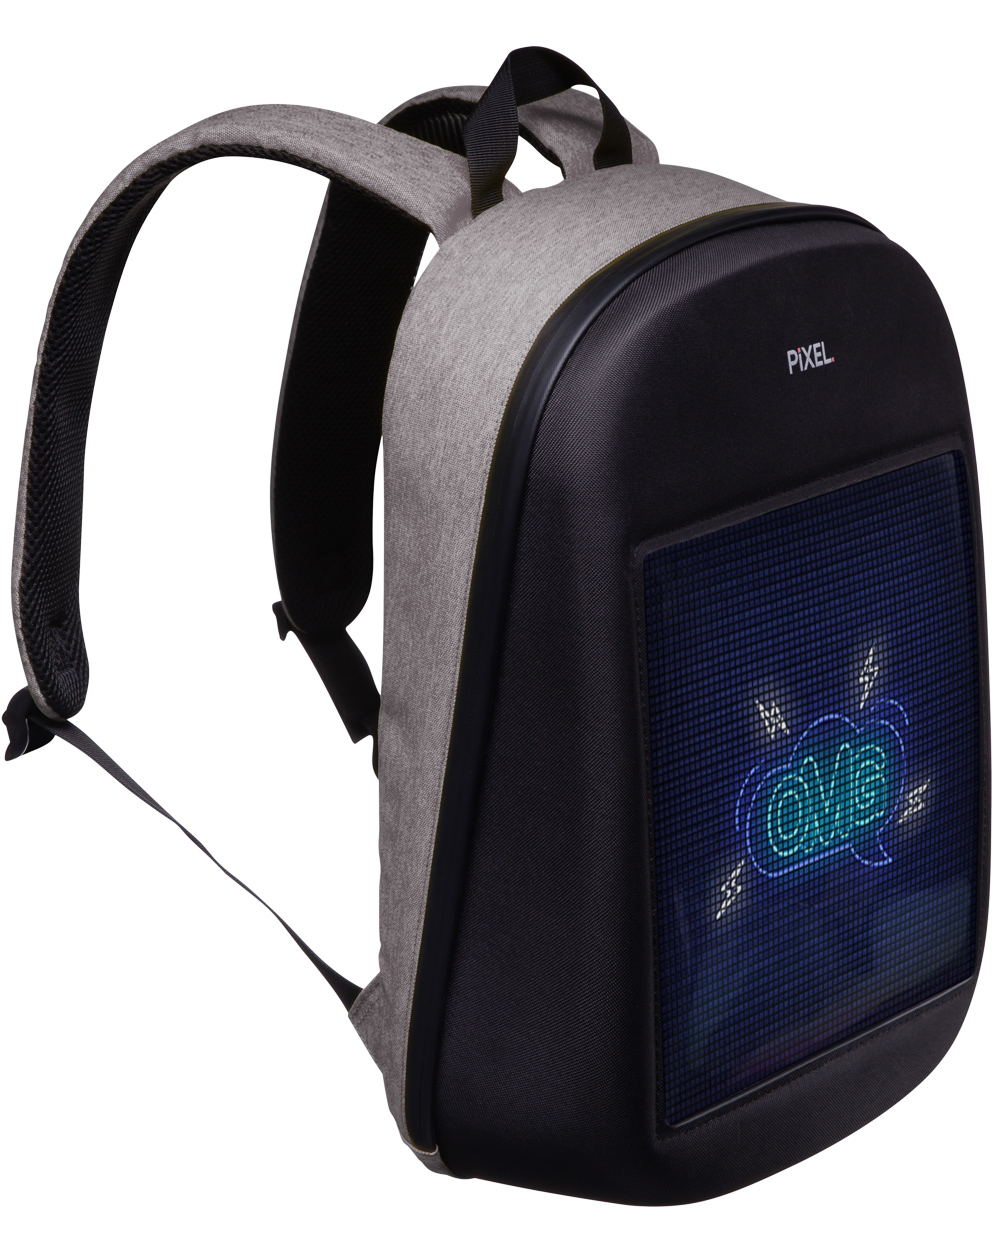 Black Backpack With Built-In LED Display 64*64 PIXEL BAG LED Backpack